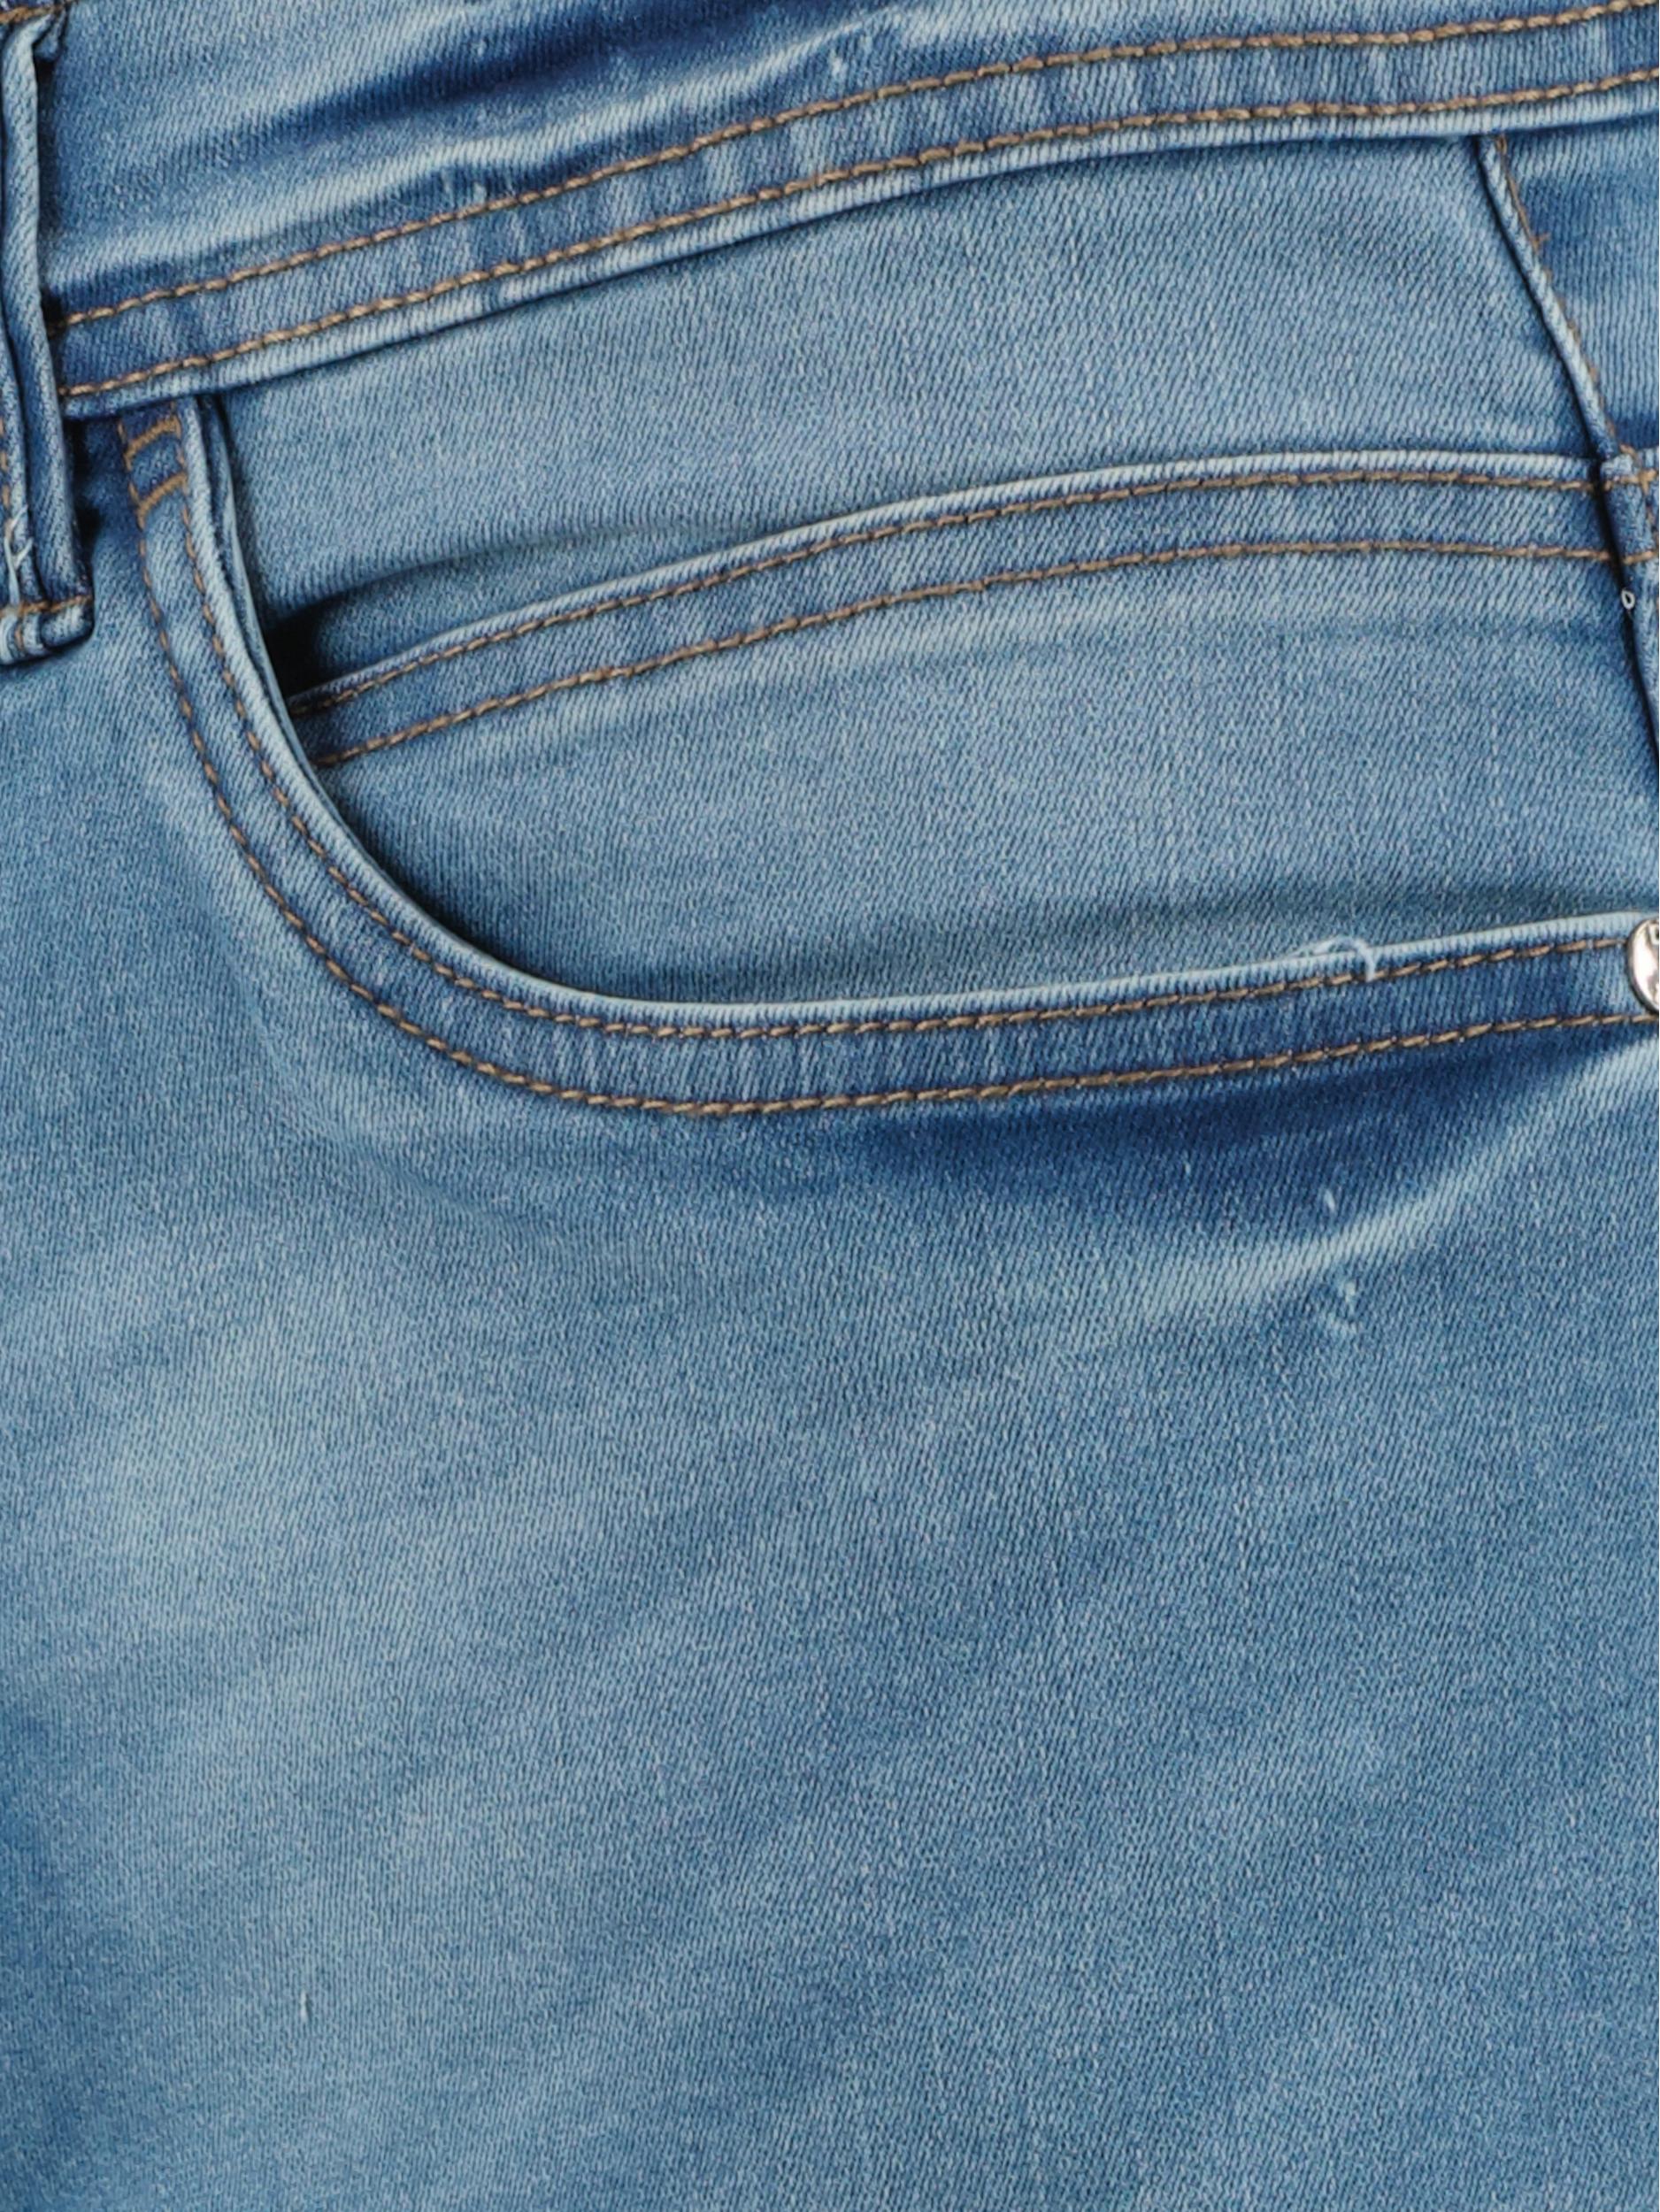 Donders 1860 Korte Broek Blauw Jeans Short 76759/730